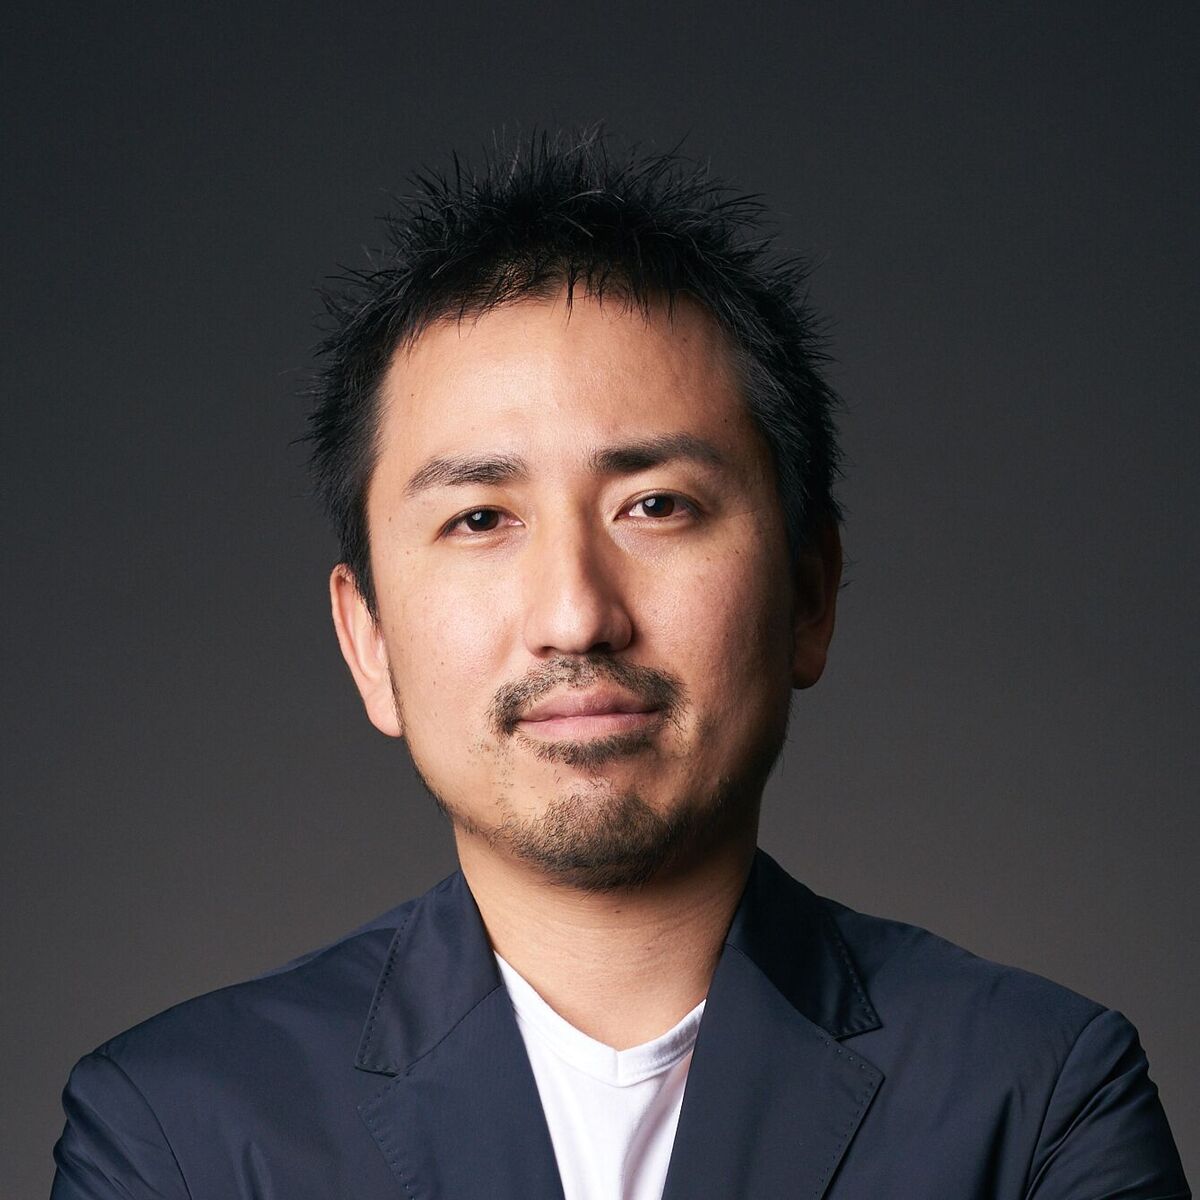 Kazuhiro Shimura, Creative Director at Dentsu Inc. Japan